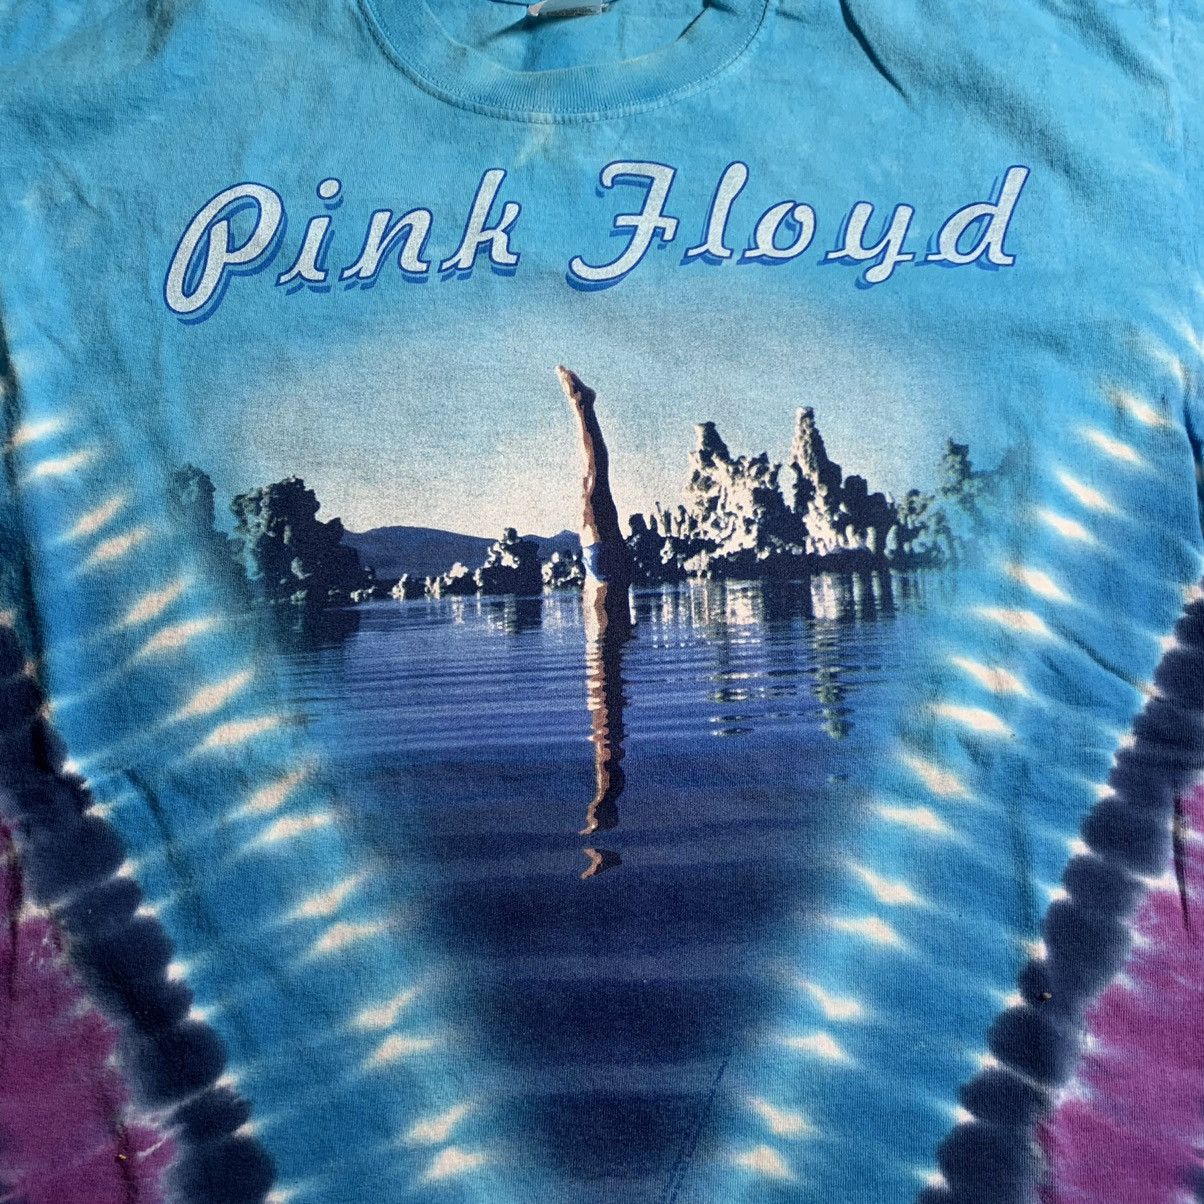 Vintage Vintage 2002 Pink Floyd Wish You Were Here Tie Dye Shirt L Size US L / EU 52-54 / 3 - 4 Thumbnail